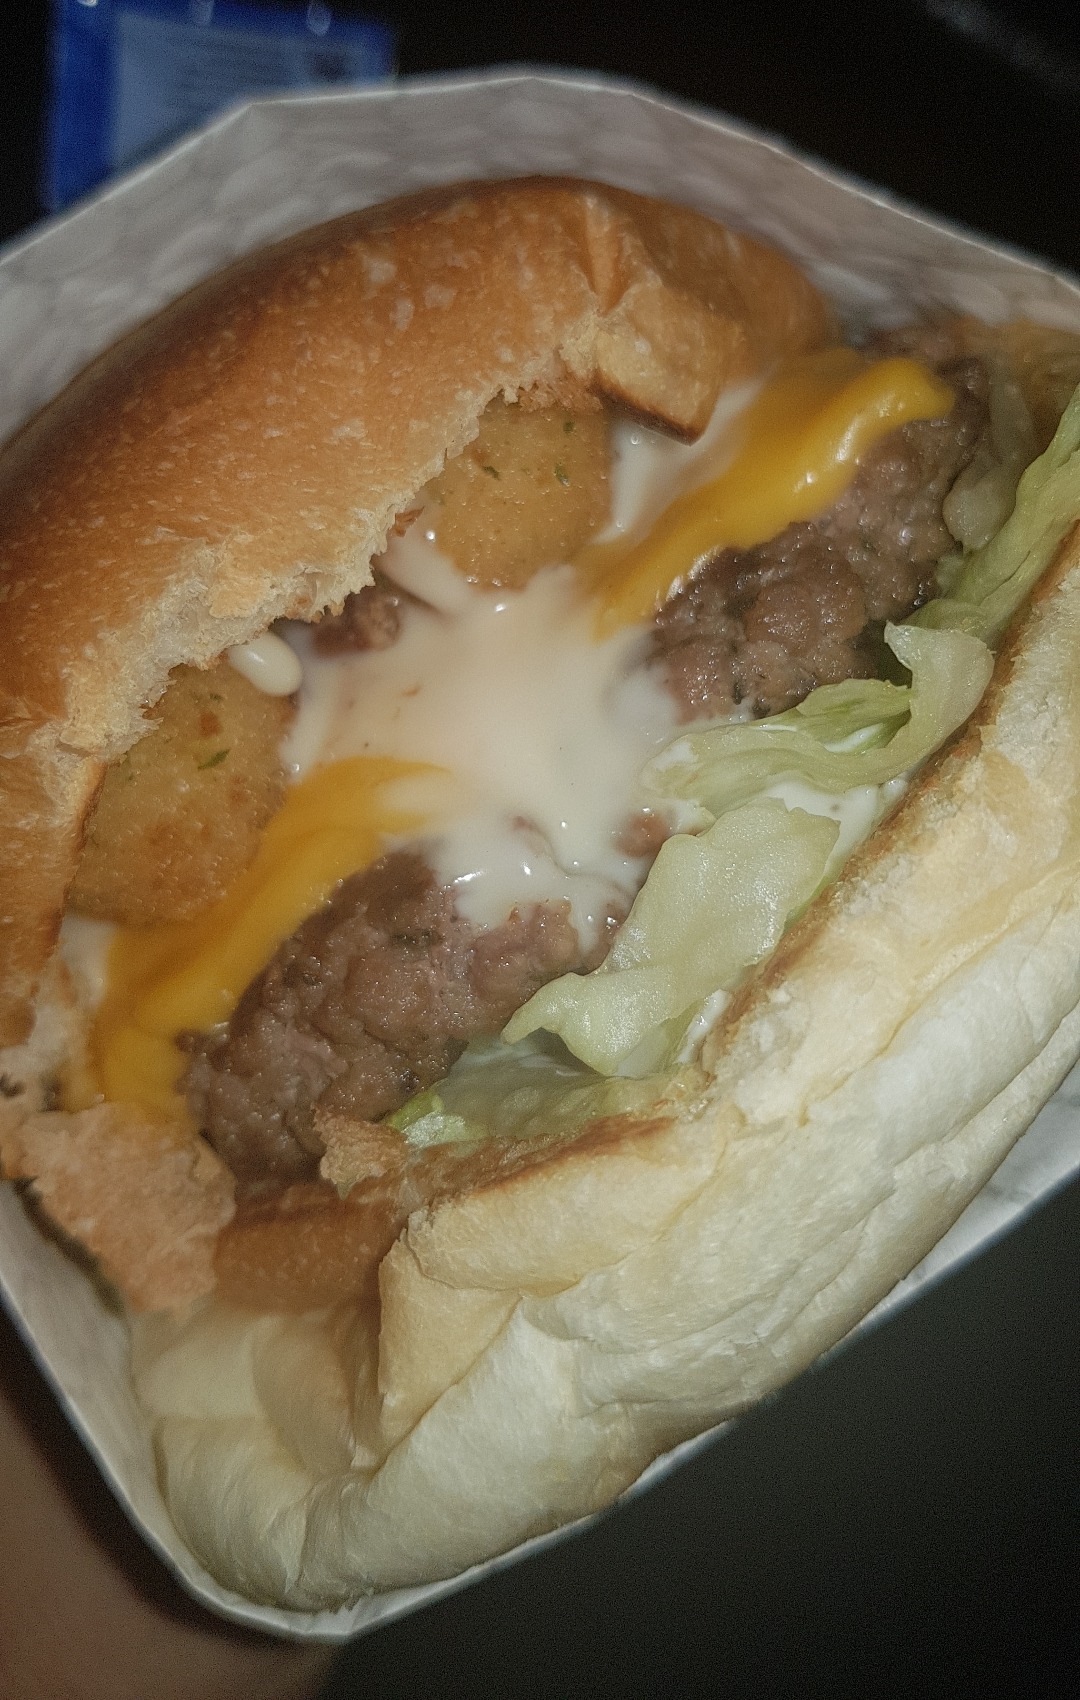 Burger 465 - Bahrain